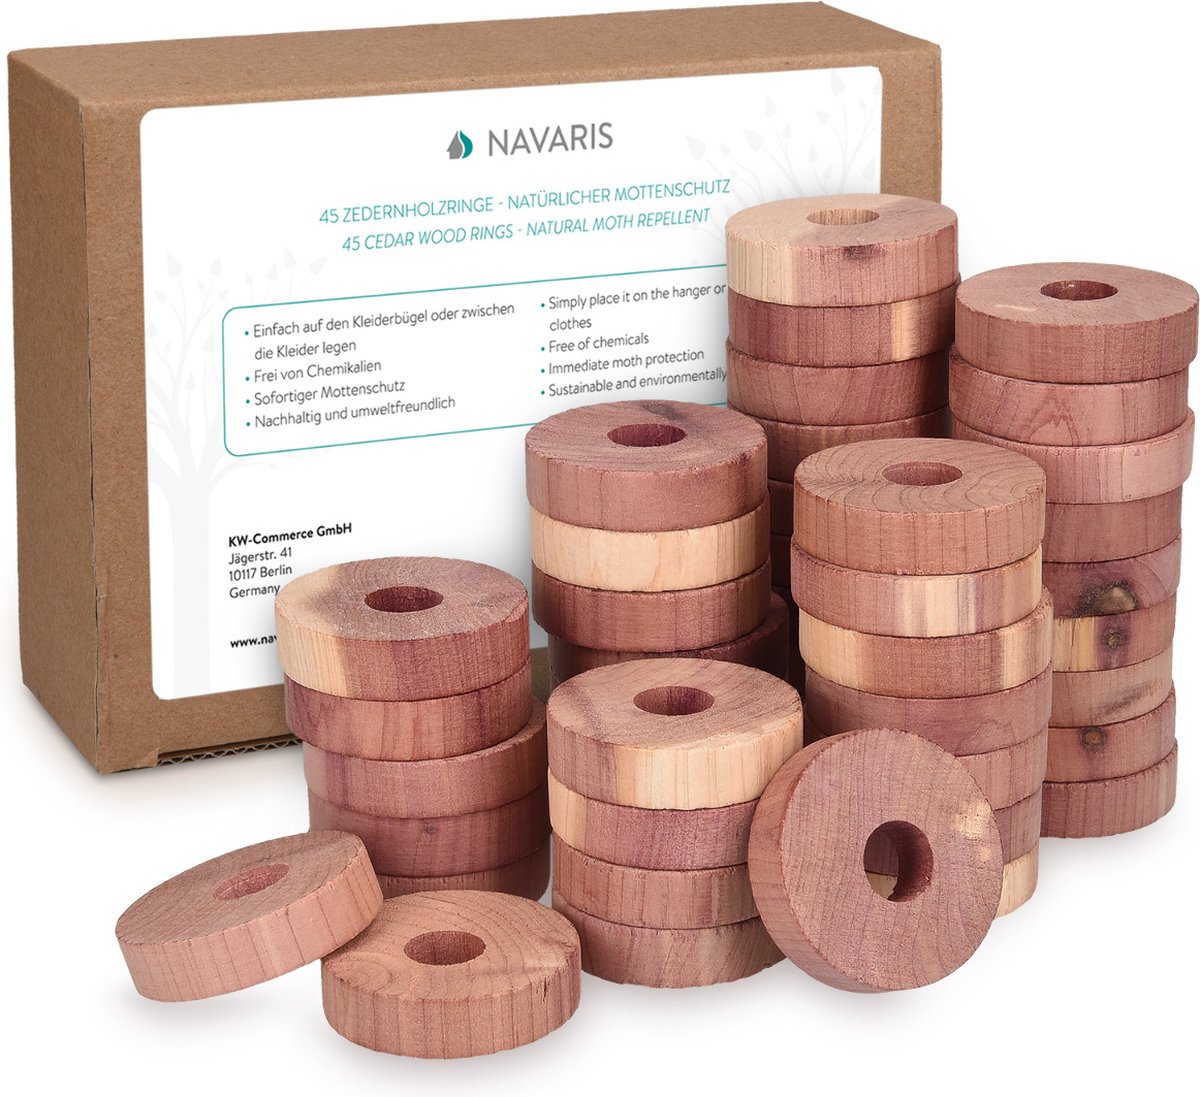 Navaris cederhouten anti-motten hangers - Set van 45 natuurlijke cederhouten Kkeding mottenringen - Pak met blokjes voor kledingkast of lade